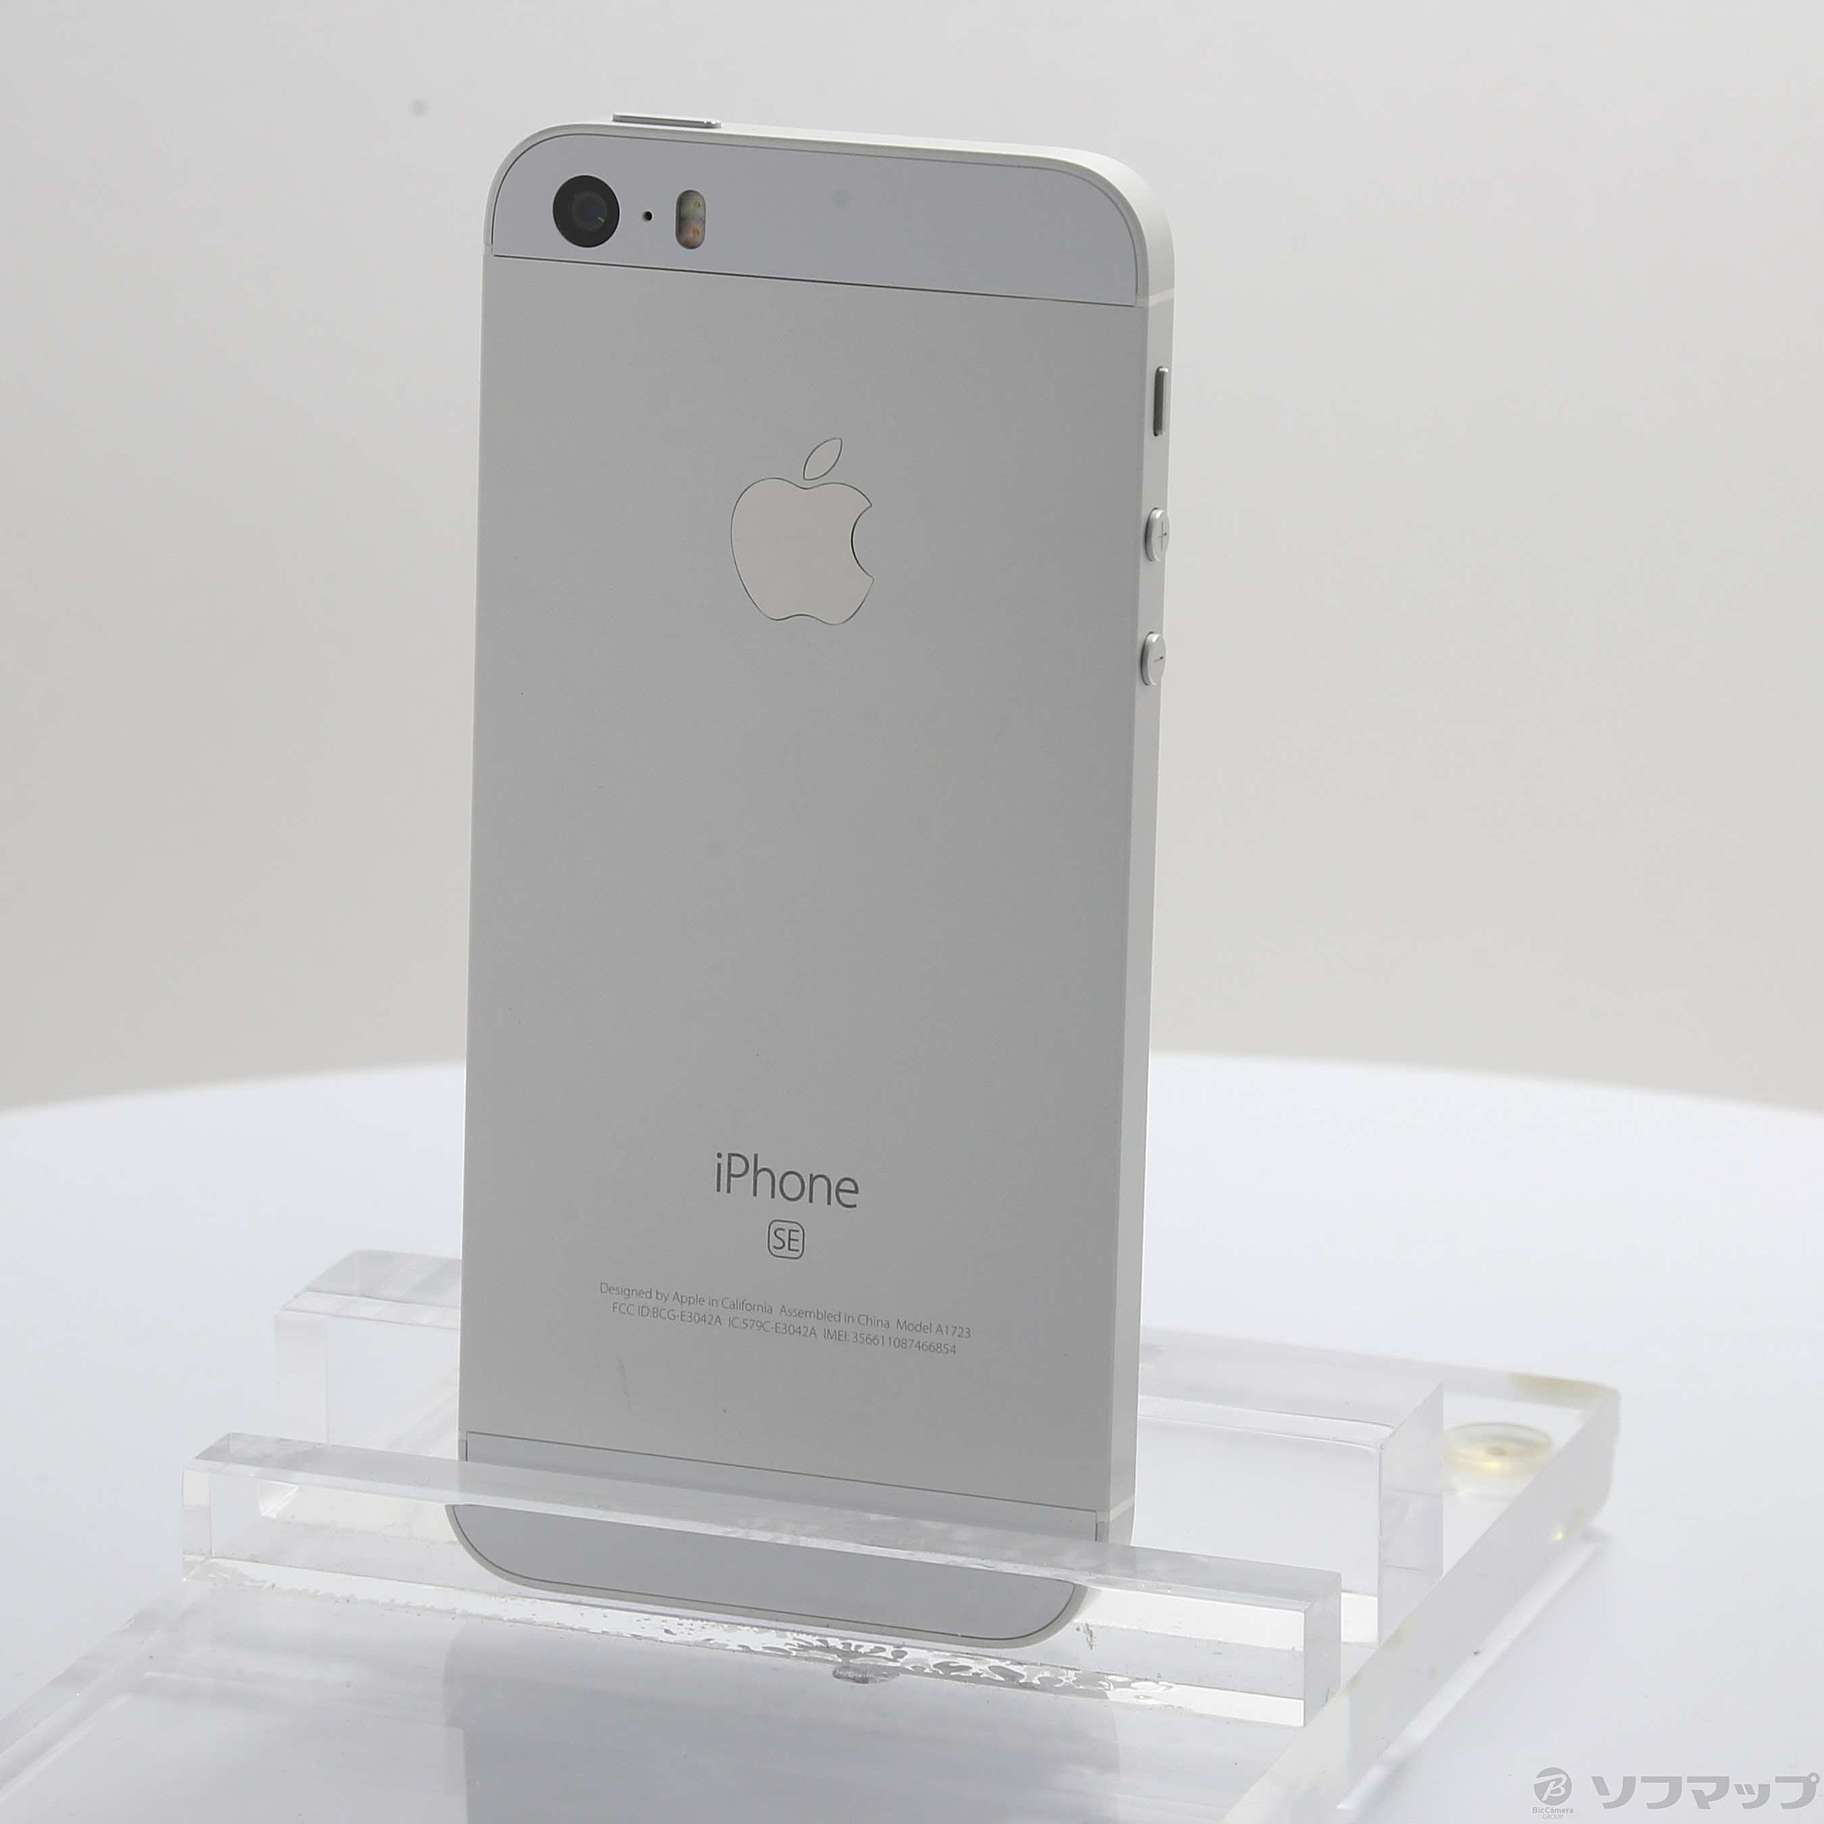 【 未使用品 】Apple iPhone SE 64GB SIMフリー シルバー